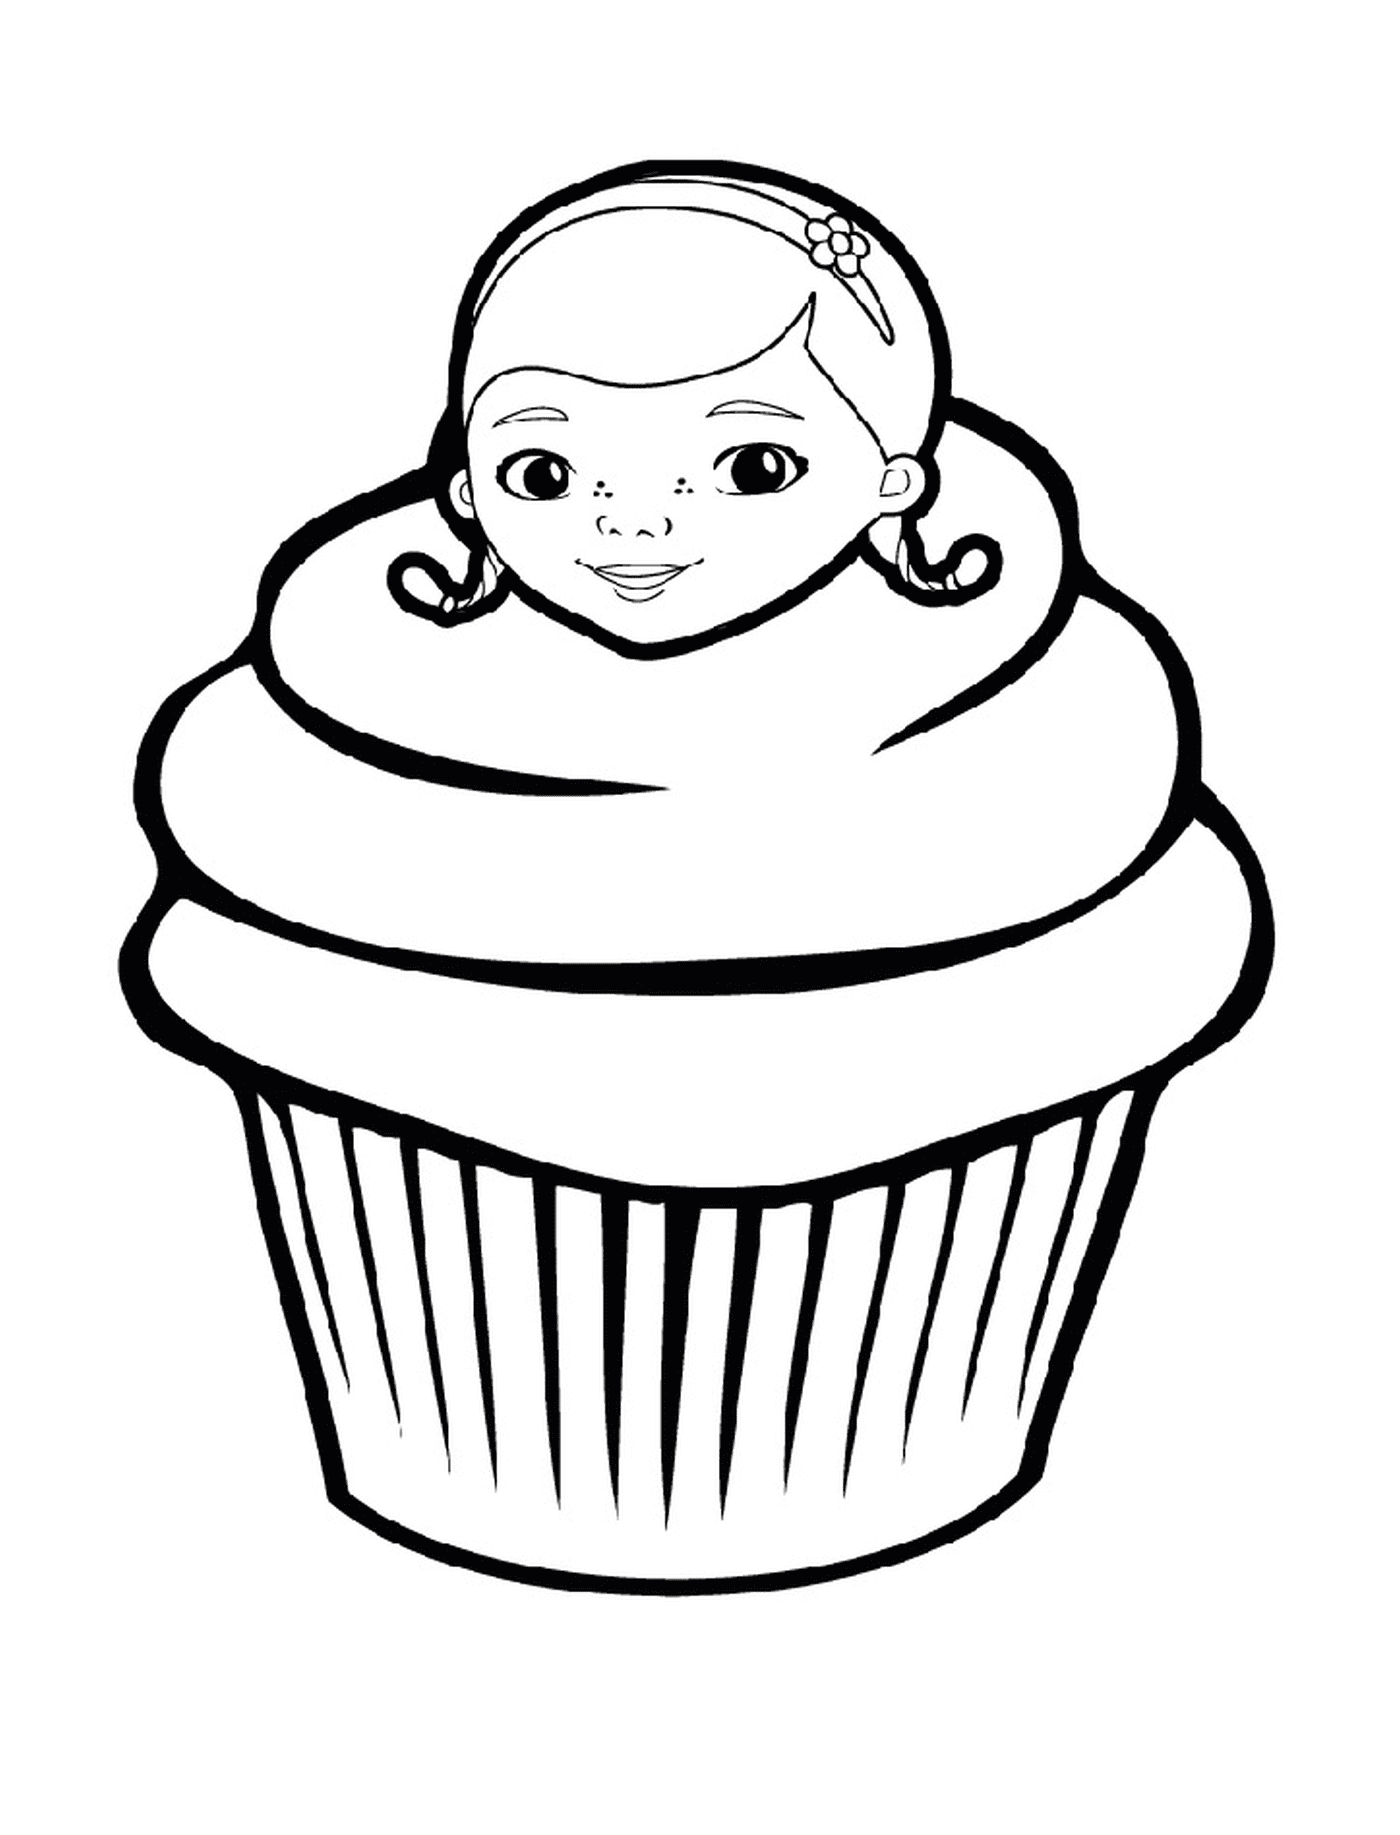  Ein Cupcake von Doc McStuffins, mit dem Gesicht einer Frau 